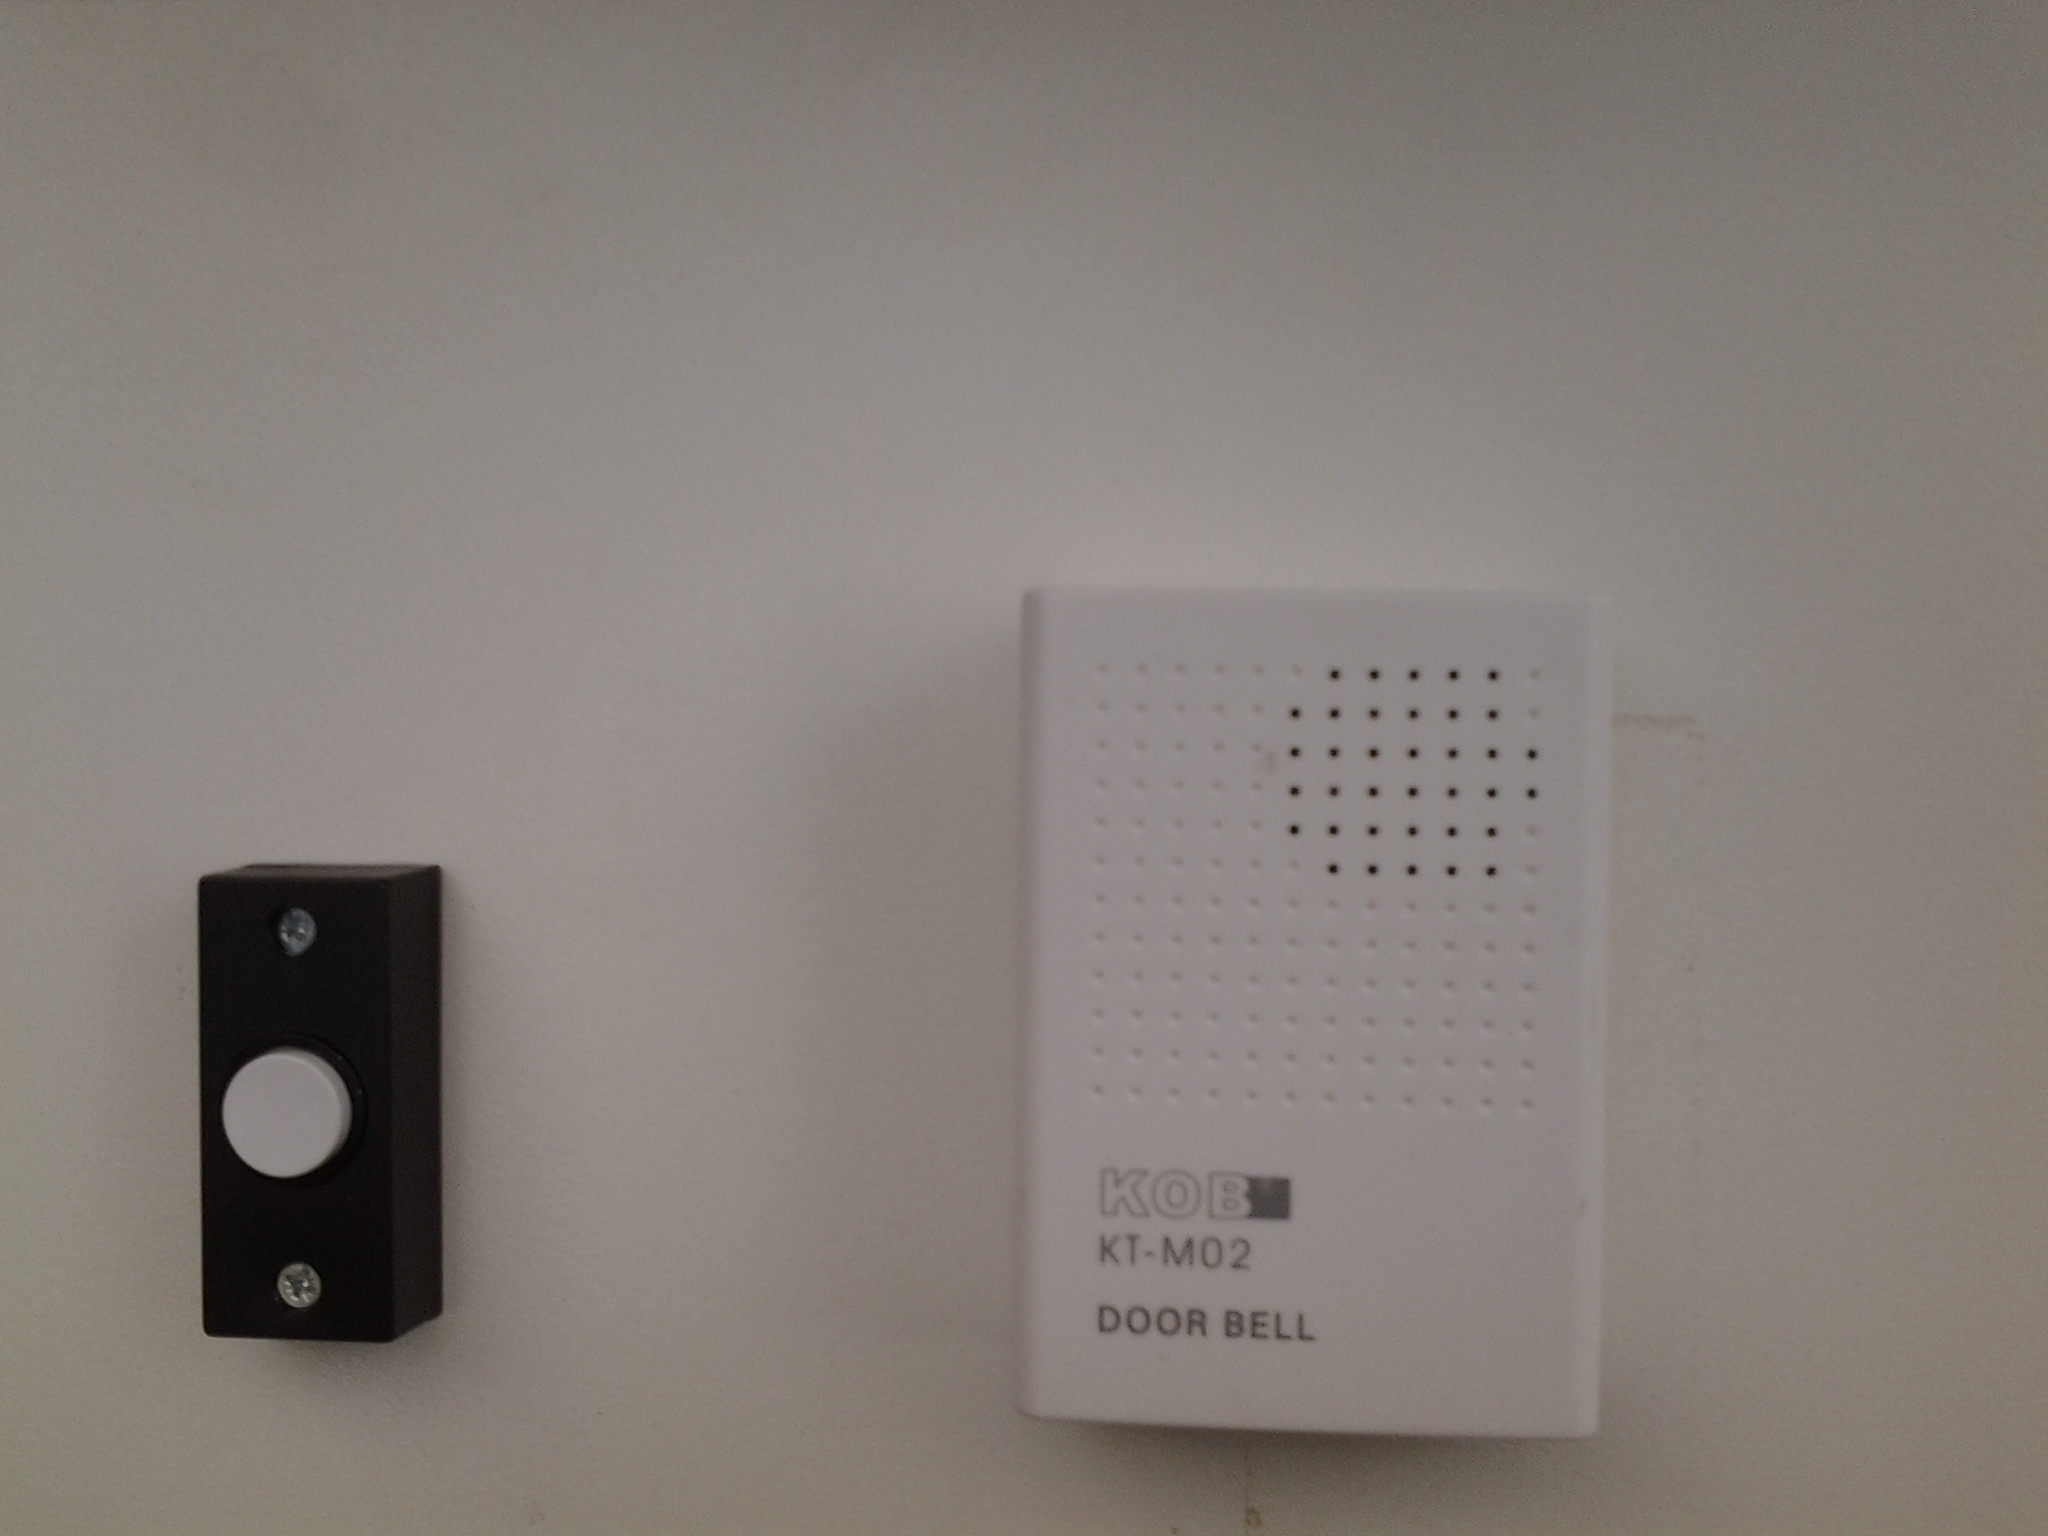 Hard Wired Doorbells Supply & Fit in Melbourne doorbell intercom wiring diagram 